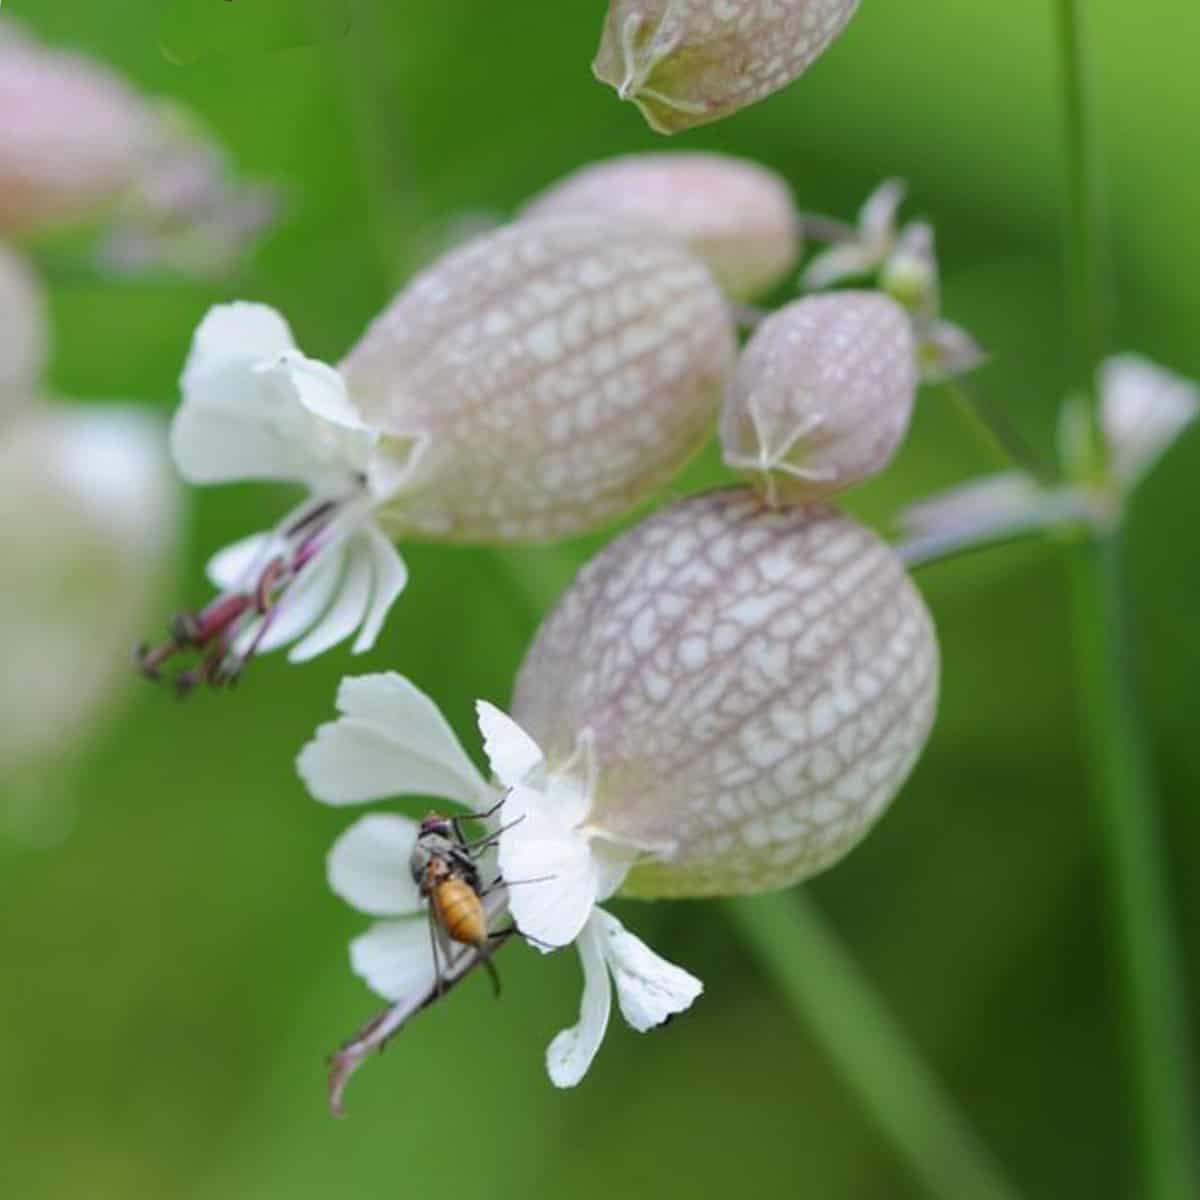 silene vulgaris flower and calyx with a fly